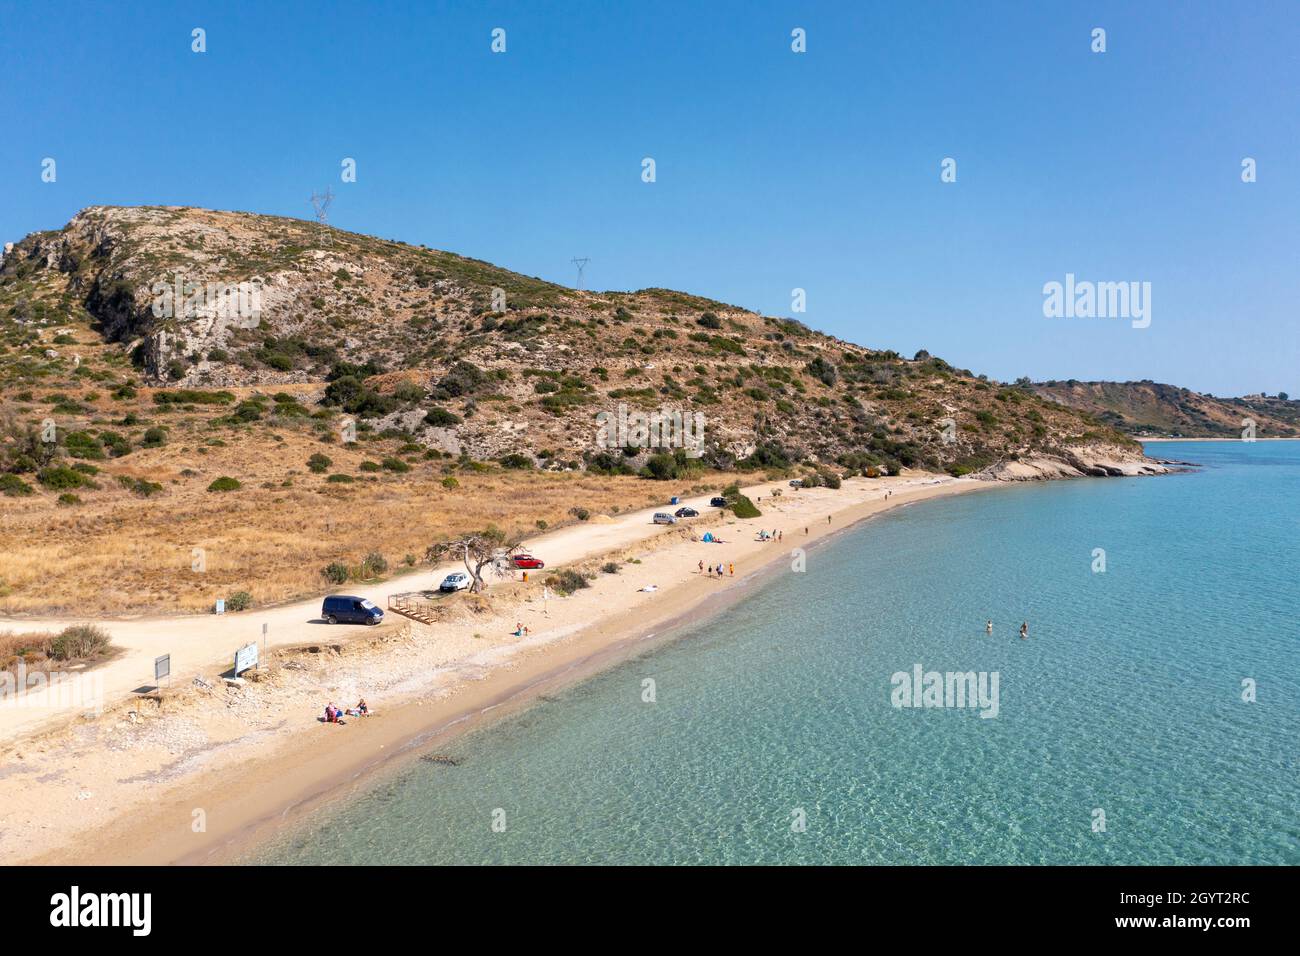 Vista aérea del paisaje de una playa (Paralia Katelios) en la costa sur de Kefalonia, Islas Jónicas, Grecia Foto de stock